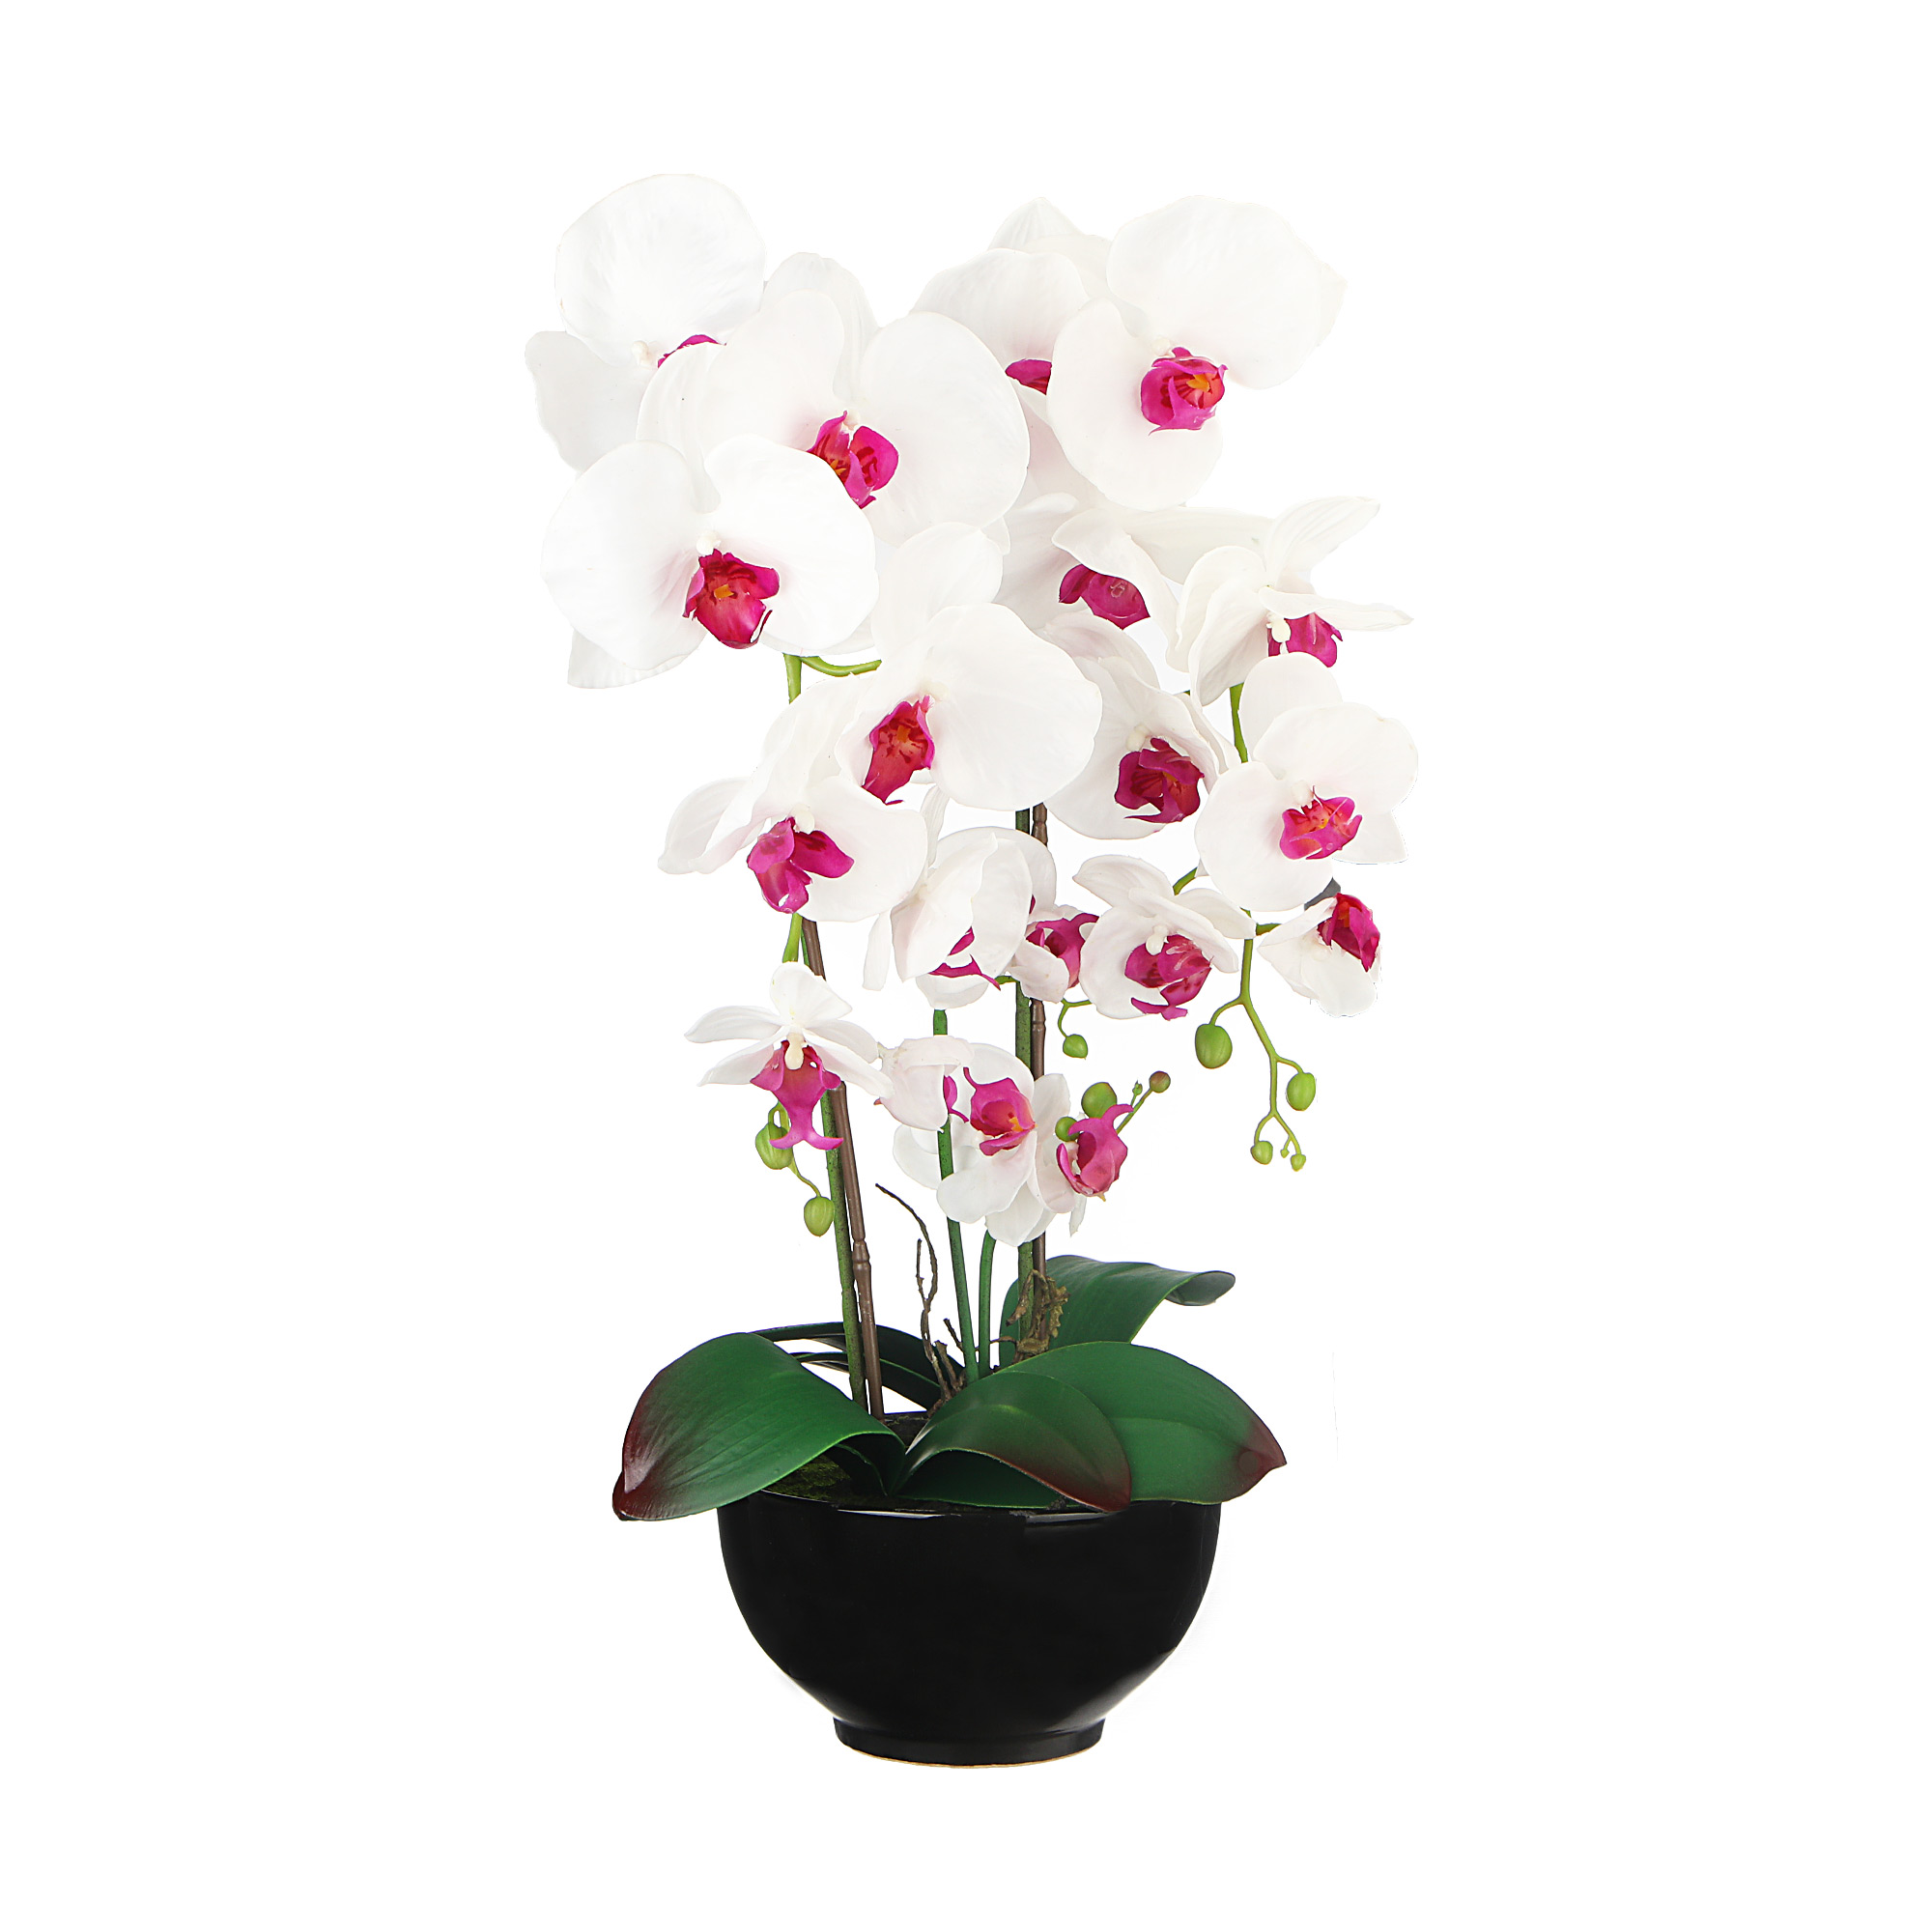 Цветок искусственный в горшке Fuzhou light орхидея бело-розовые лепестки, 62 см